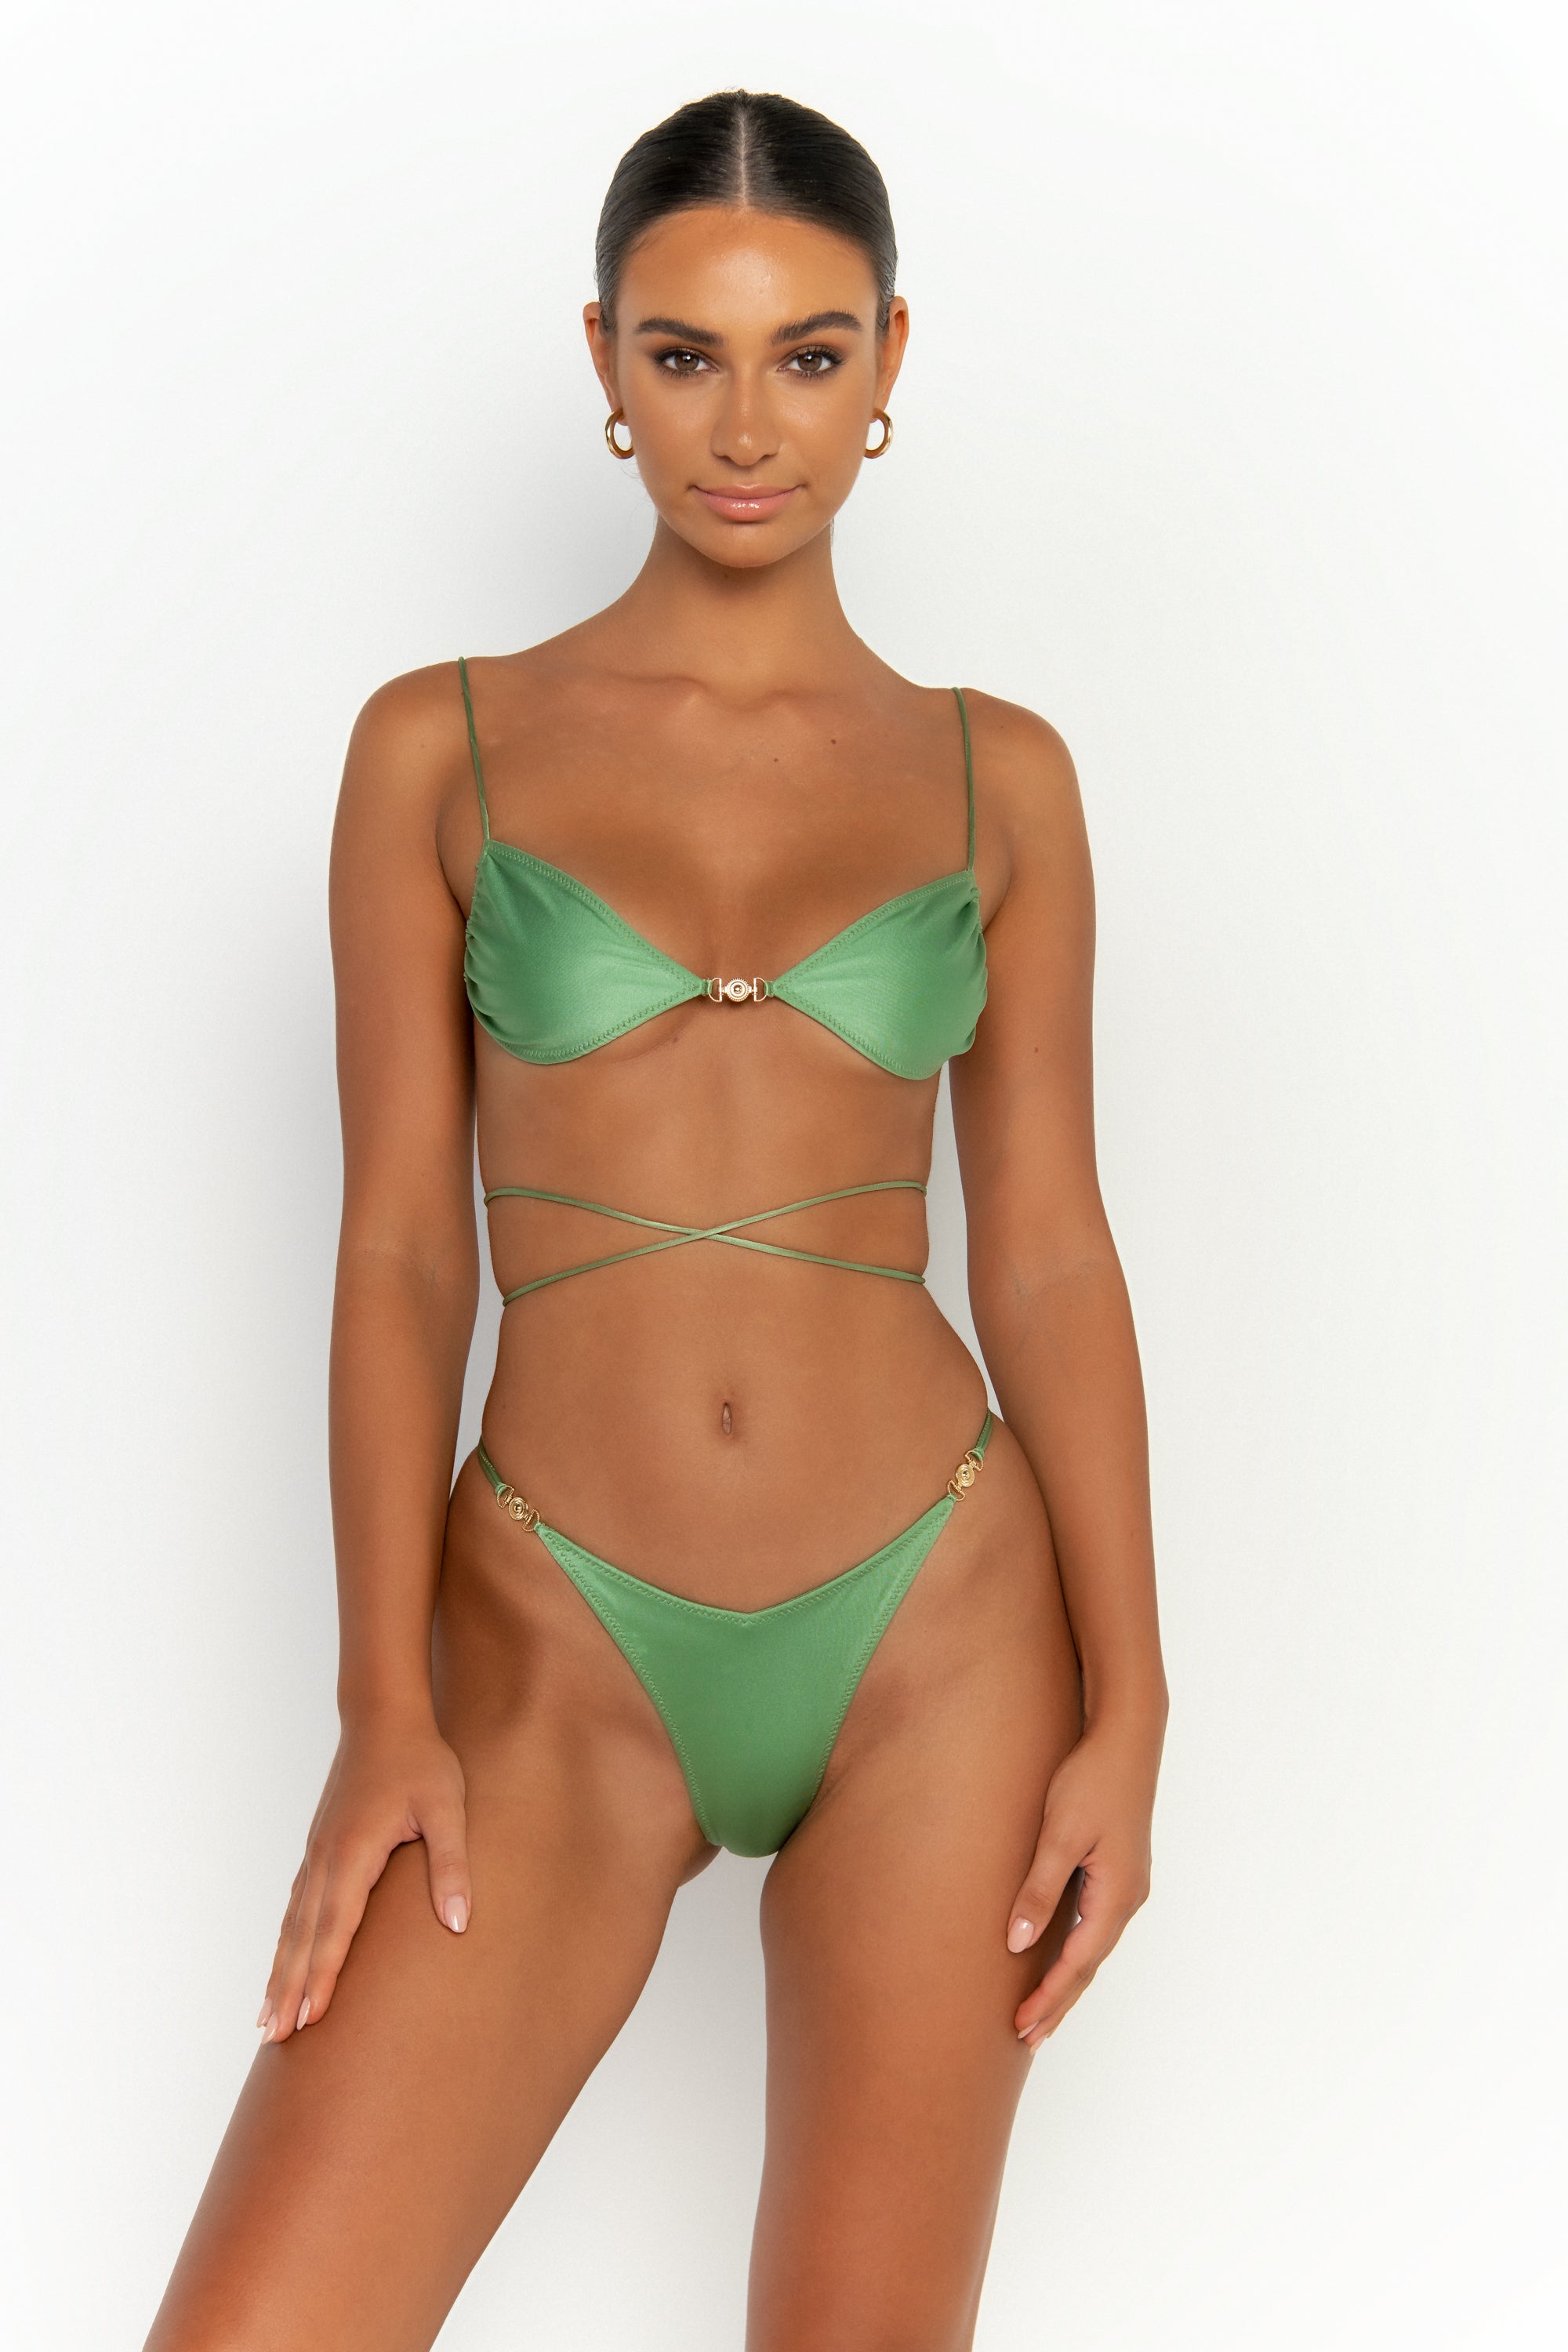 front view elegant woman wearing luxury swimsuit from sommer swim - ella maltese is a mint green bikini with bralette bikini top